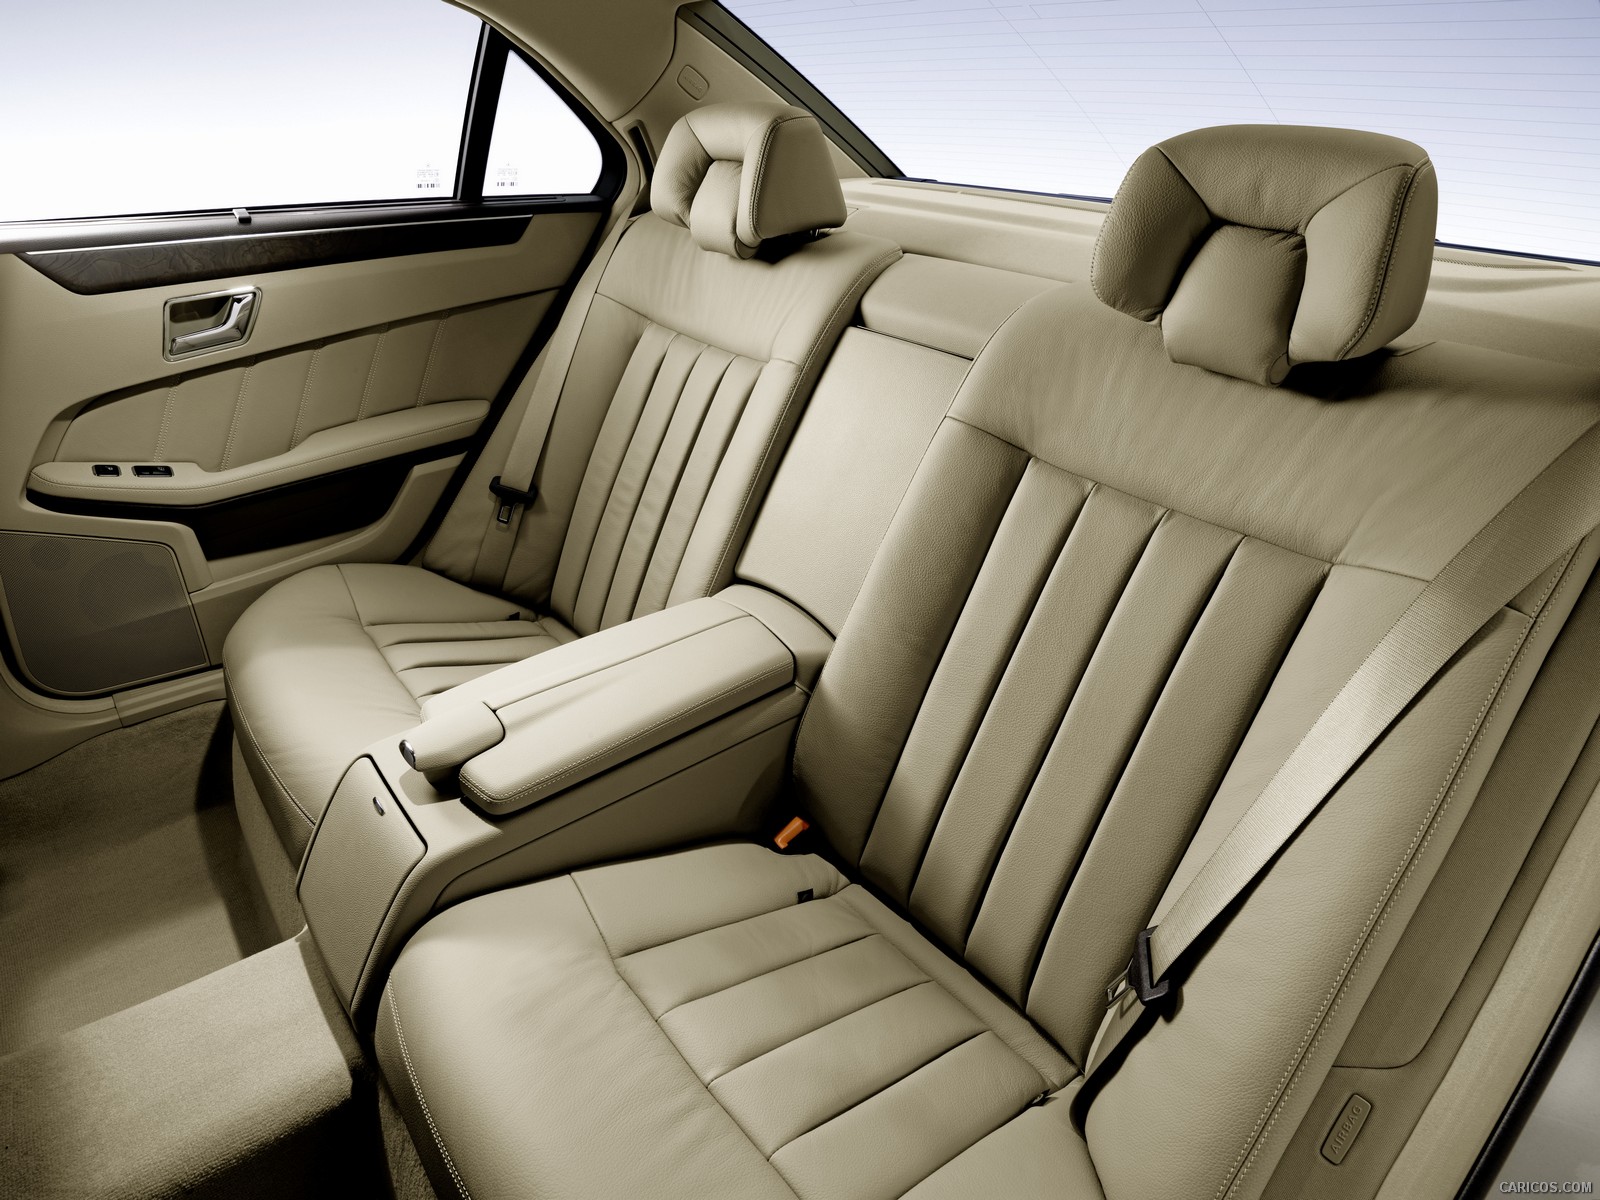 2010 Mercedes-Benz E-Class Sedan - Interior Rear Seats View Photo | Caricos